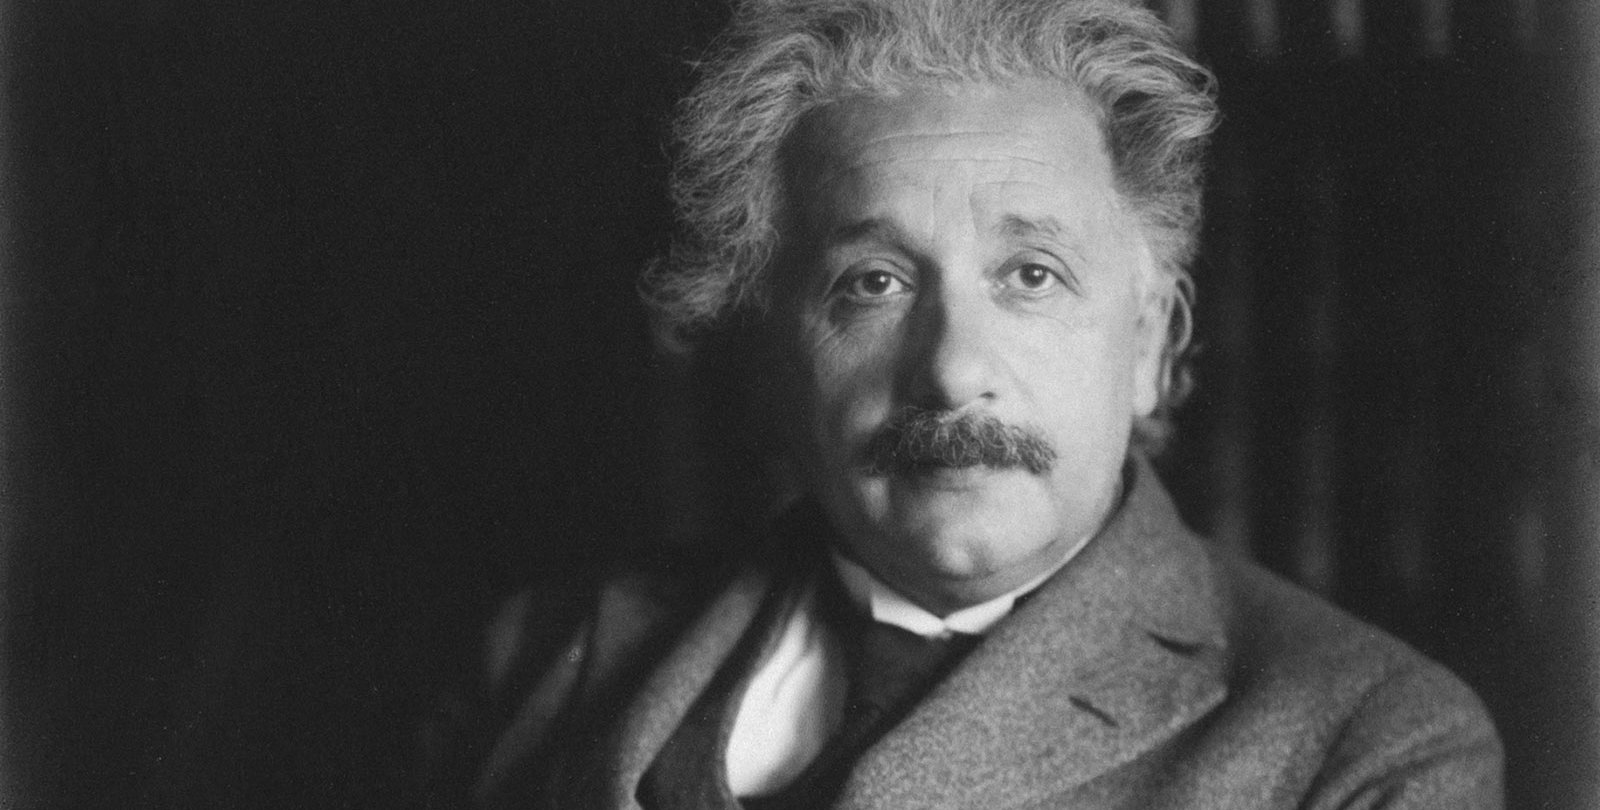 Einsteinnek volt igaza hogy az idő elteltével az emberek számára nem egyformán telik